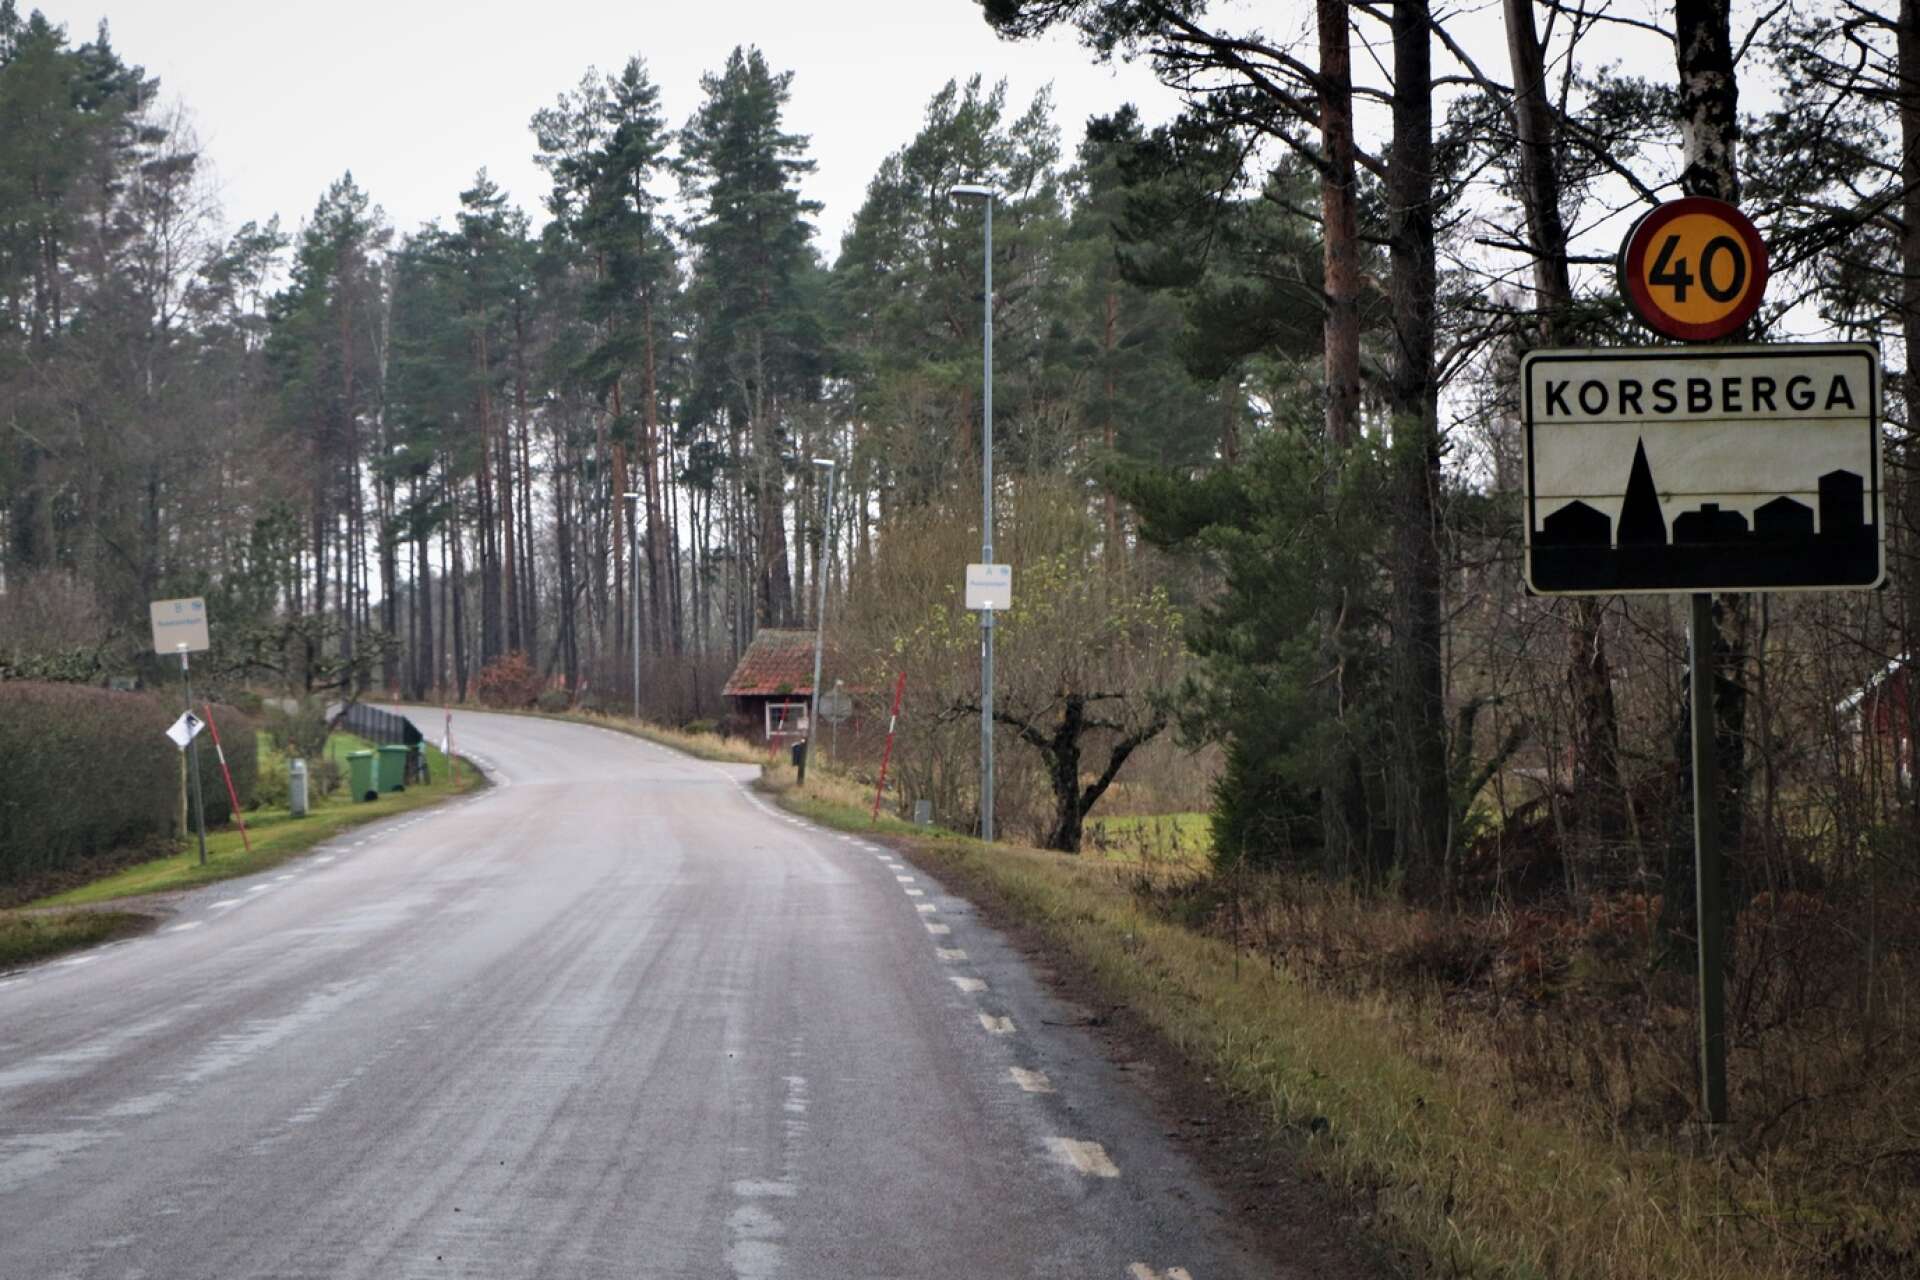 Även inne i Korsberga samhälle behövs åtgärder för att öka trafiksäkerheten för gångare och cyklister.